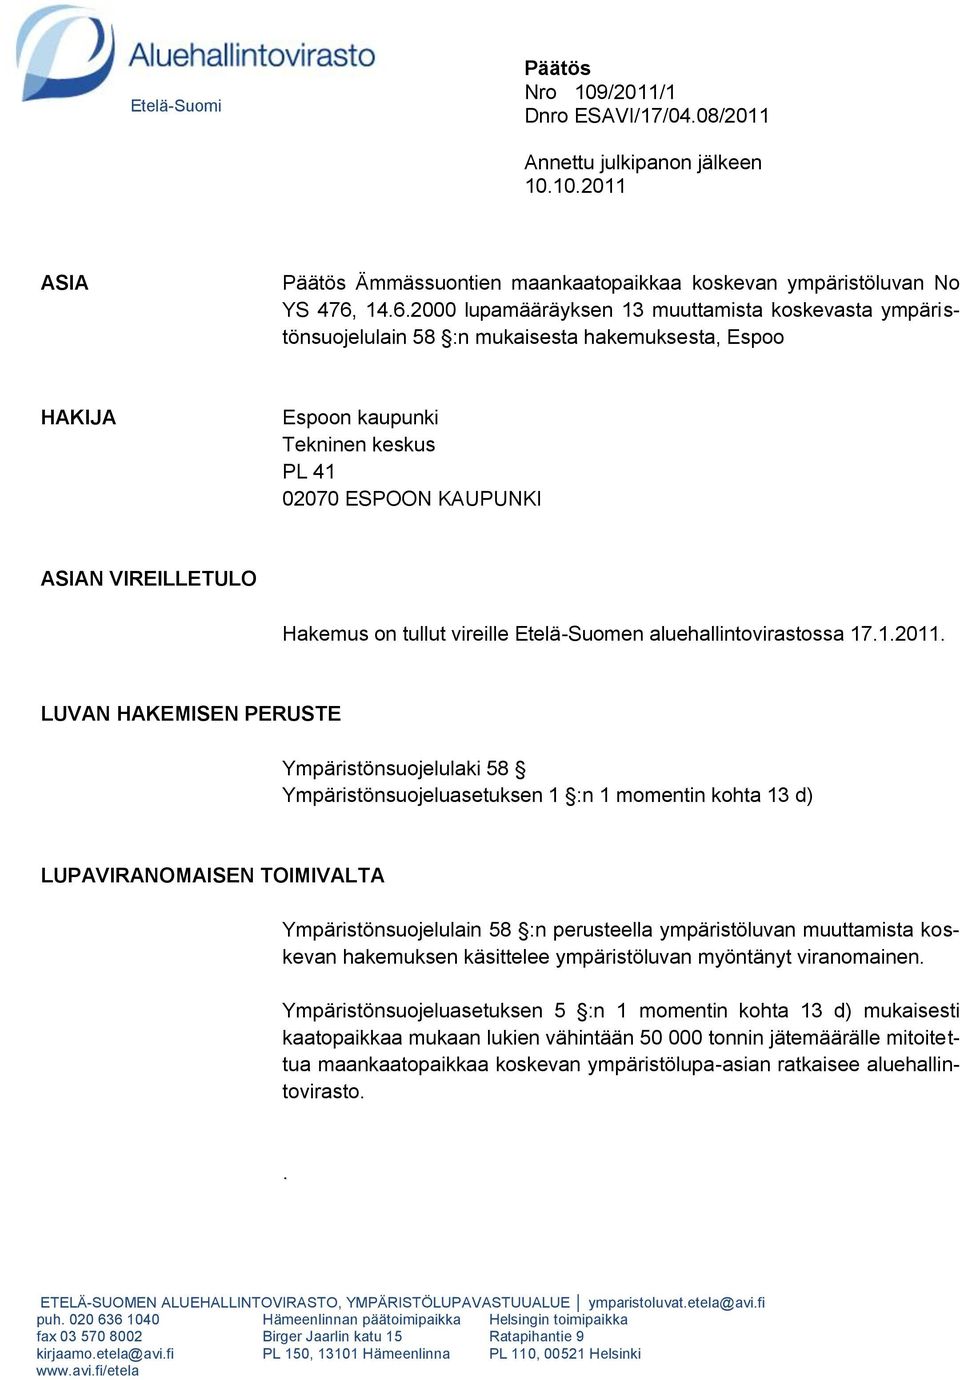 Hakemus on tullut vireille Etelä-Suomen aluehallintovirastossa 17.1.2011.